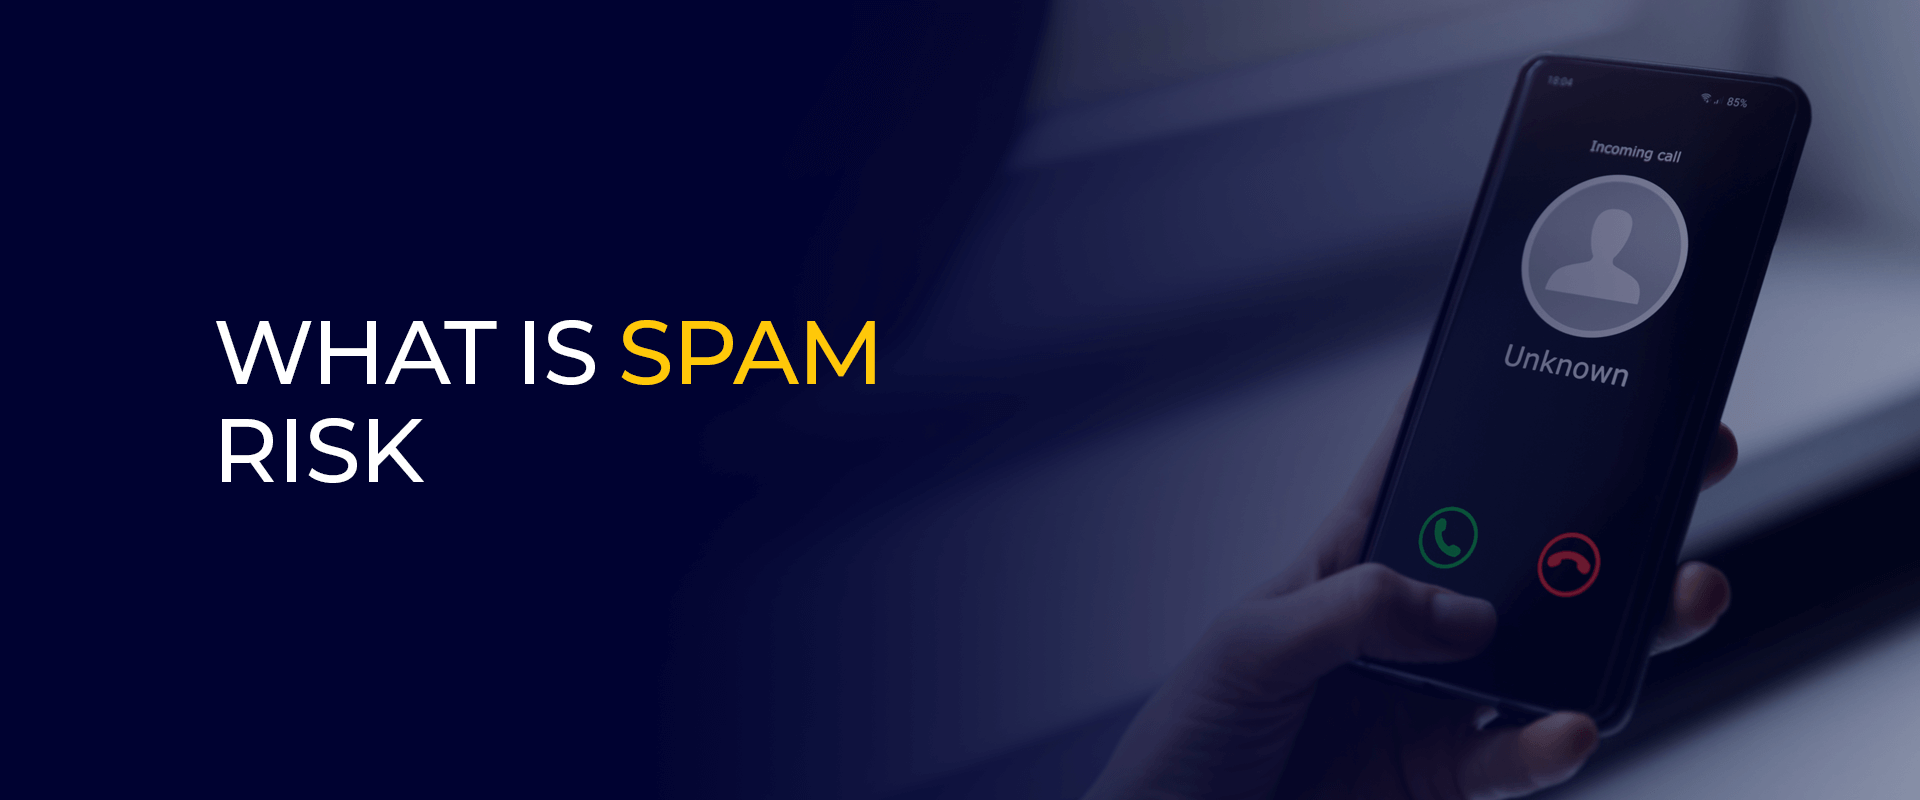 ¿Qué es el riesgo de spam?